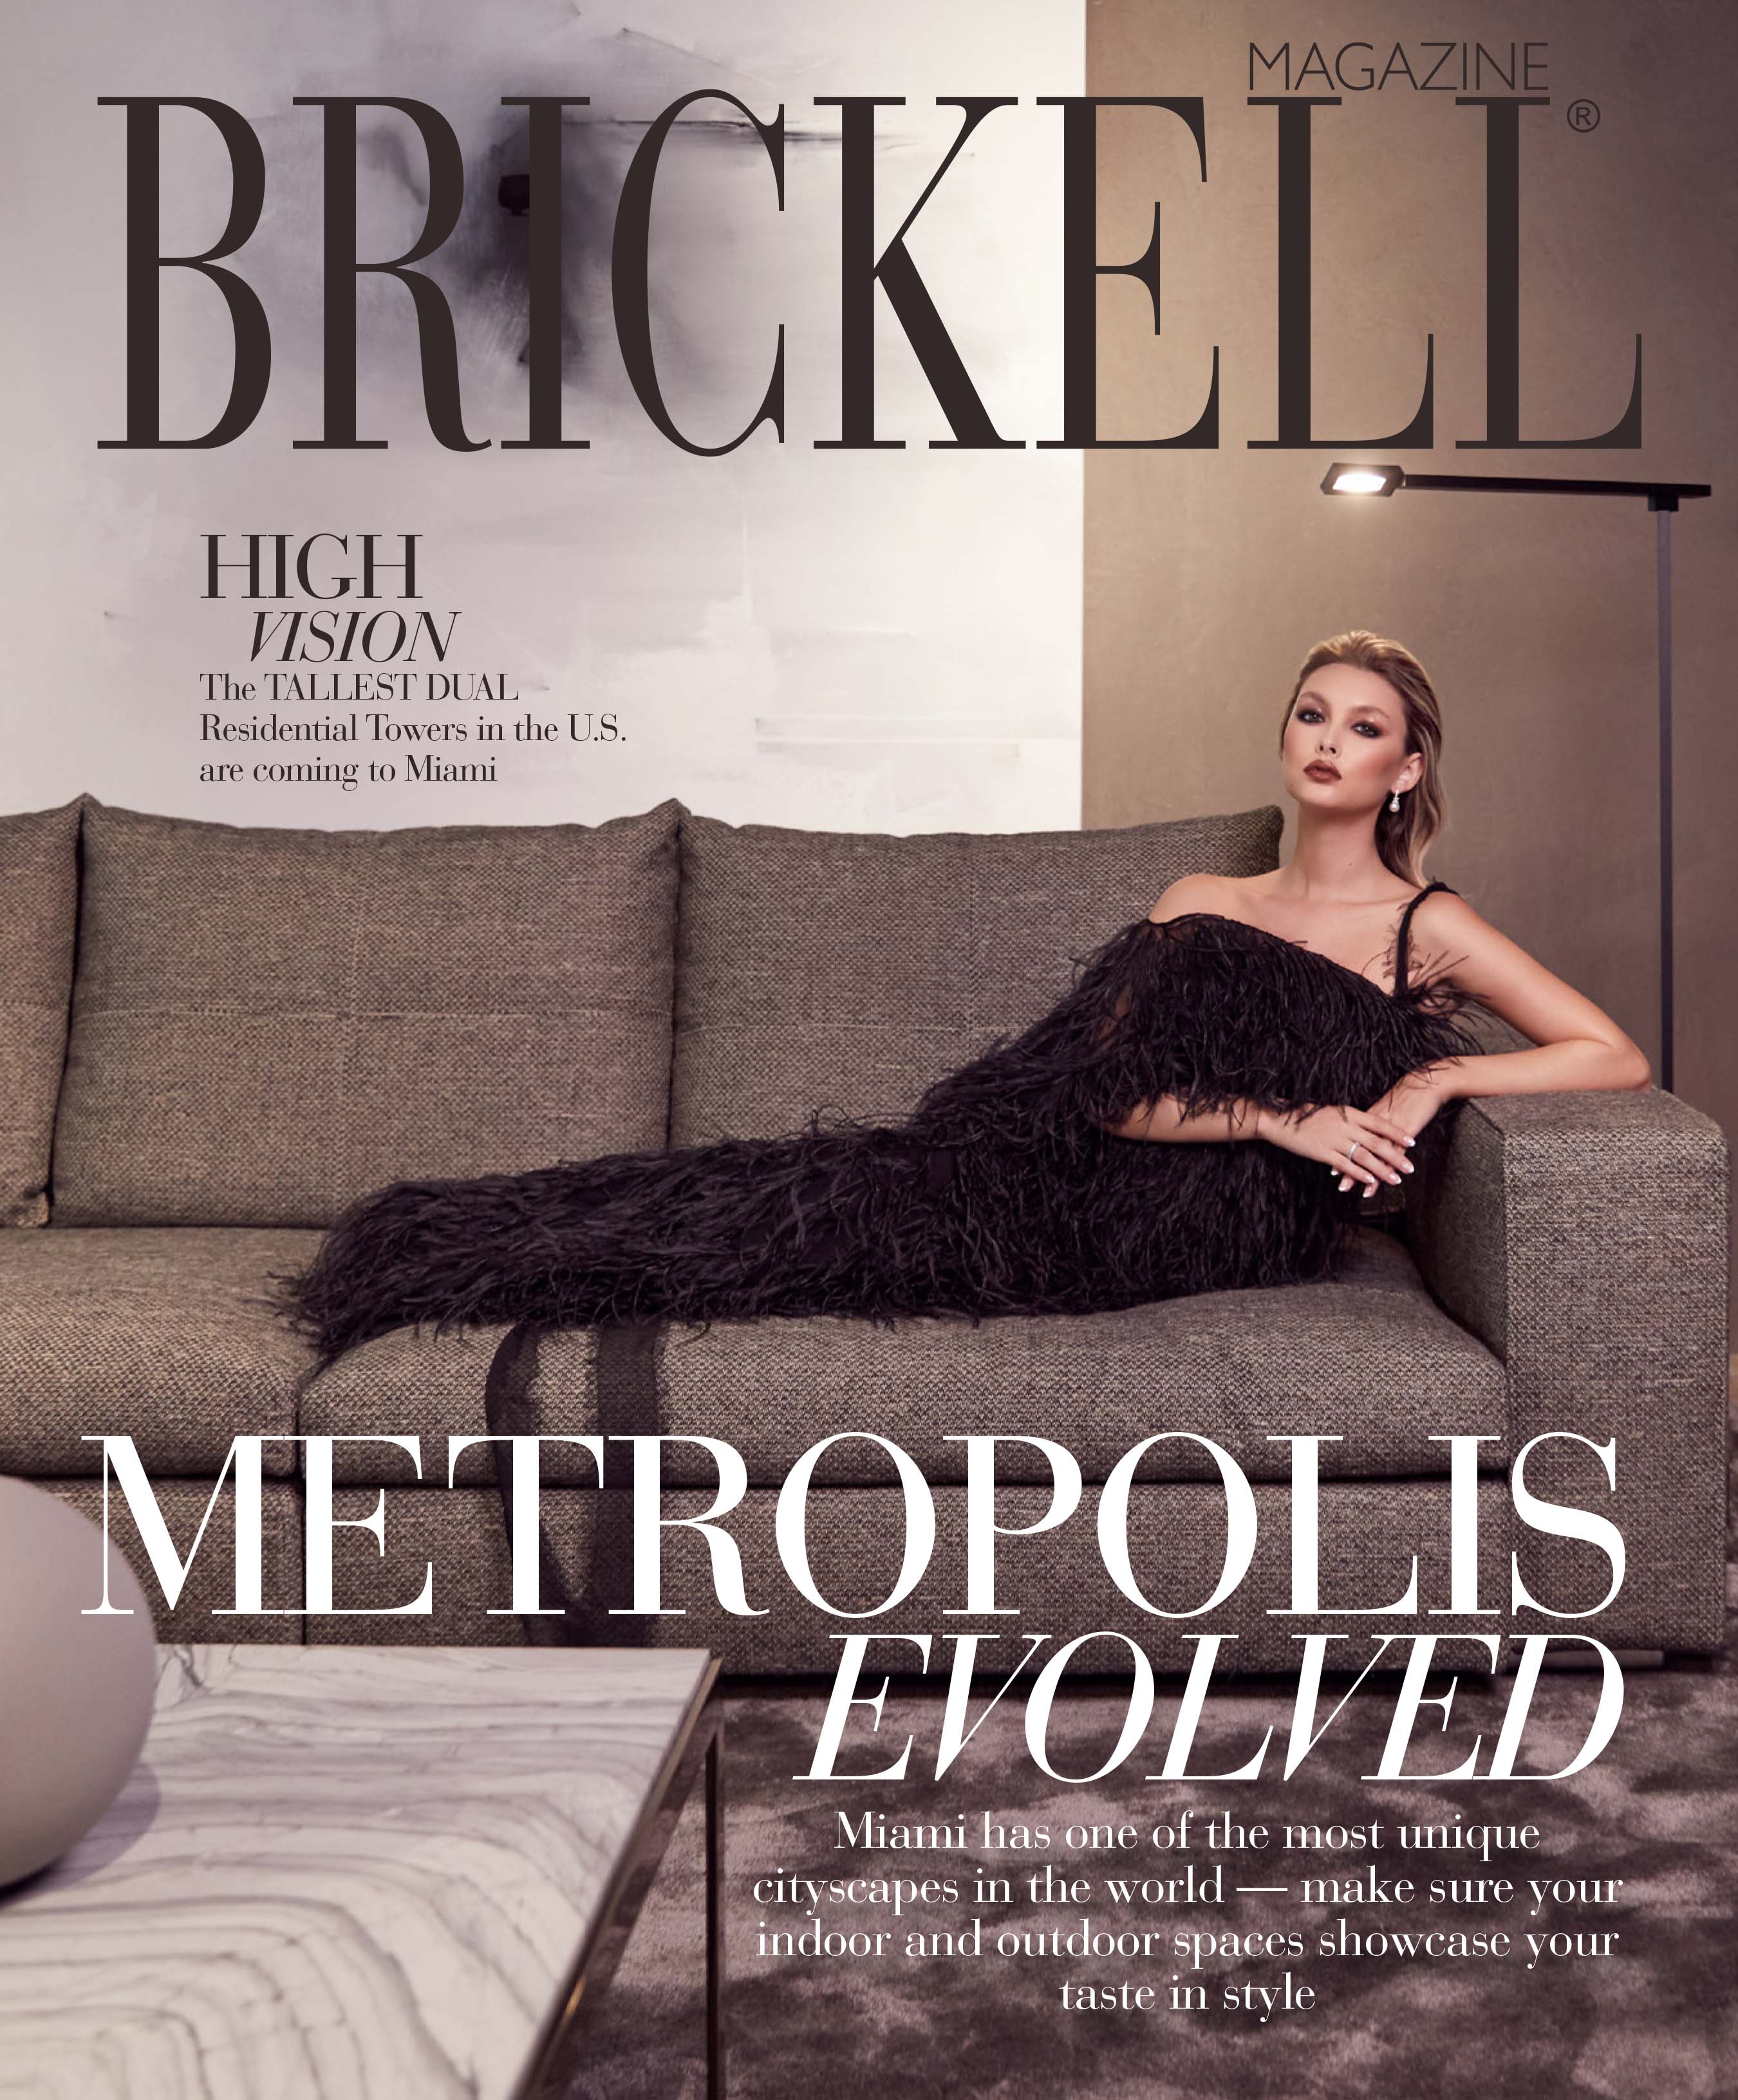 Brickell Magazine